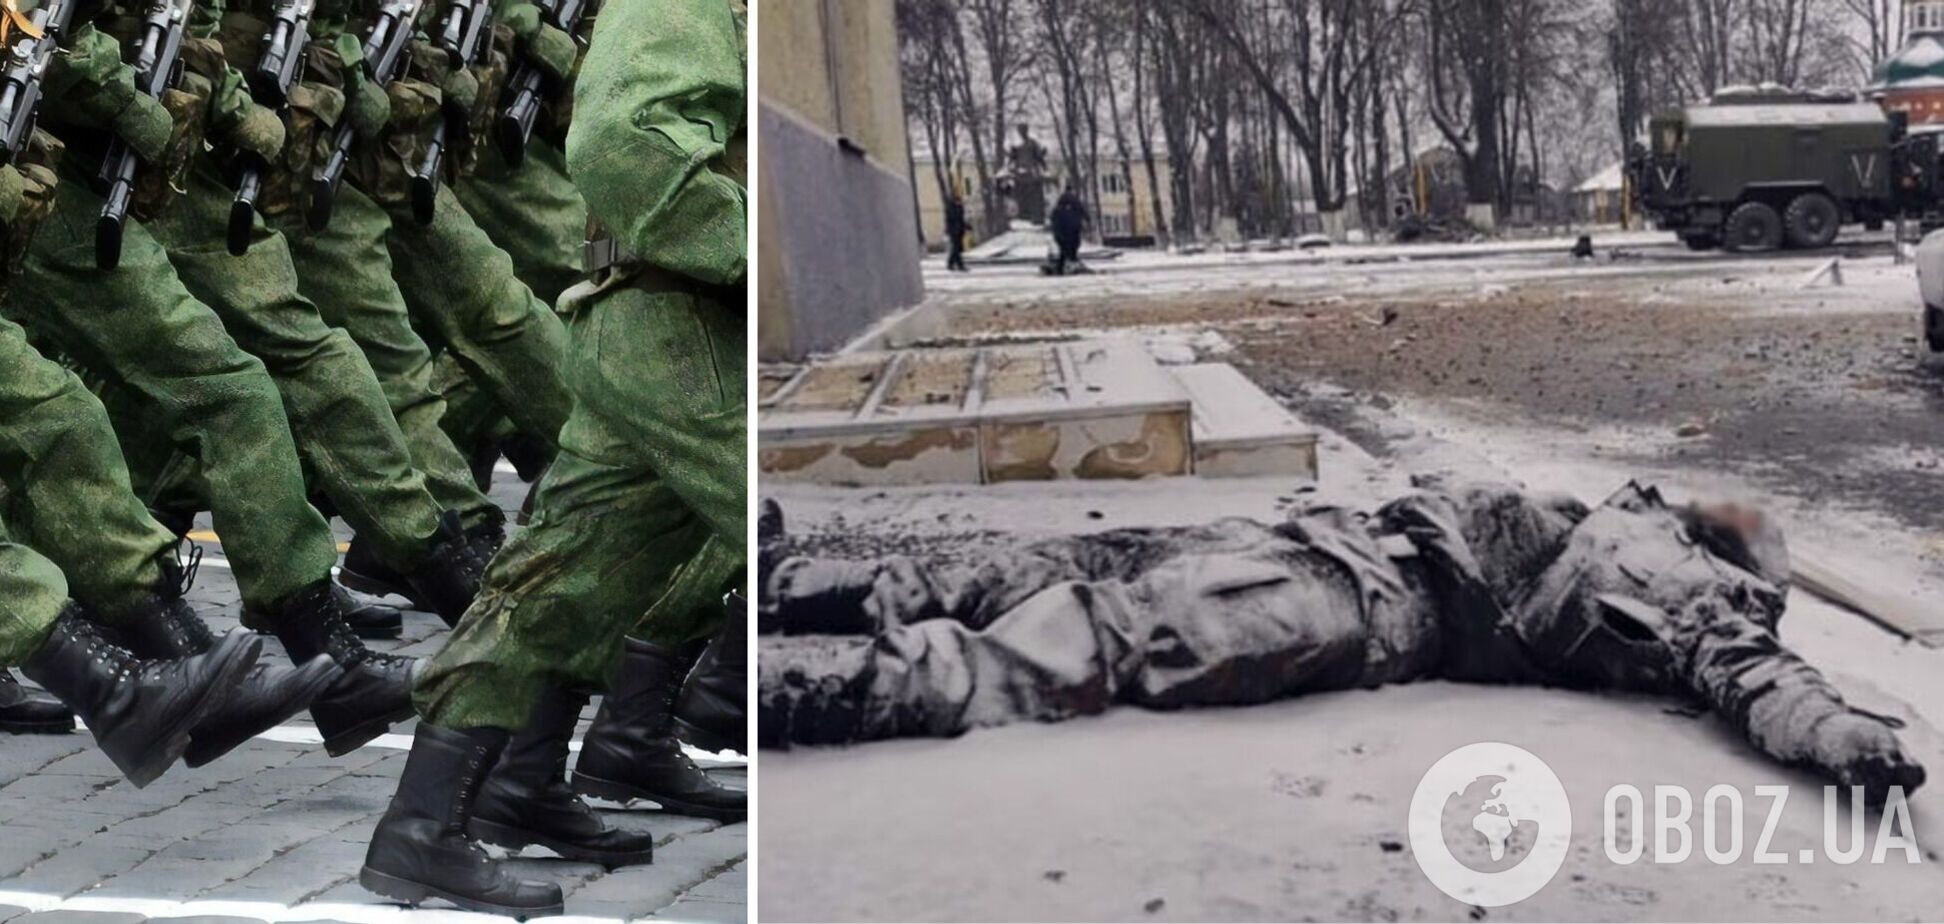 Украине грозит экологическая катастрофа из-за убитых российских солдат